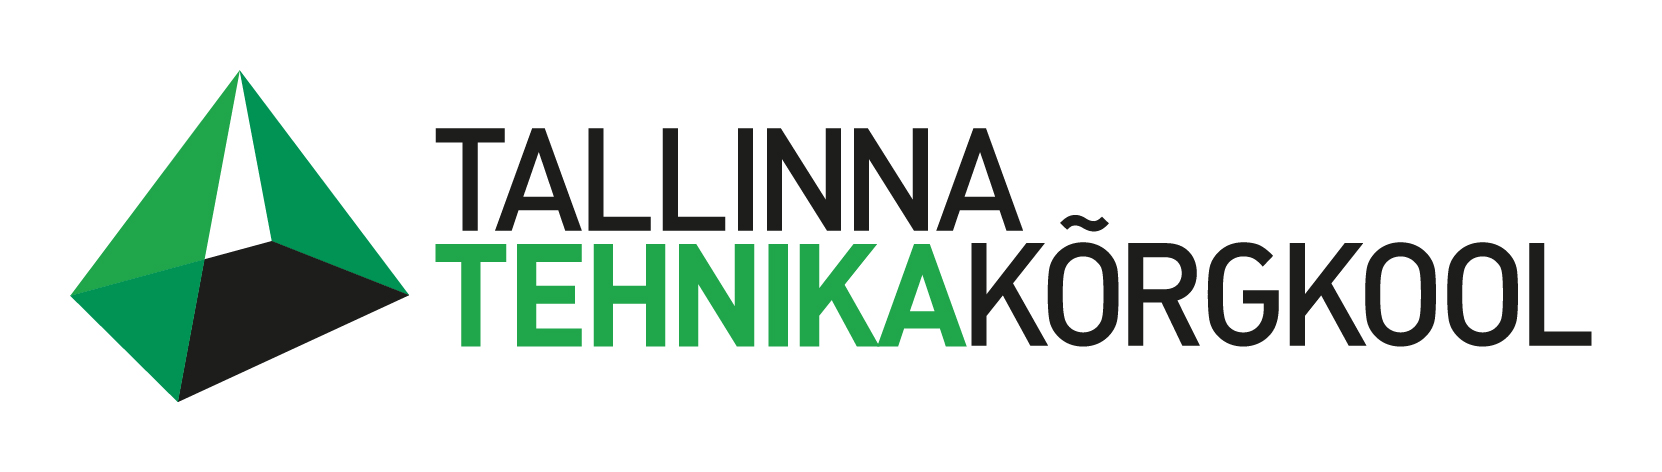 TTK-logo-2013-v-eestikeelne2